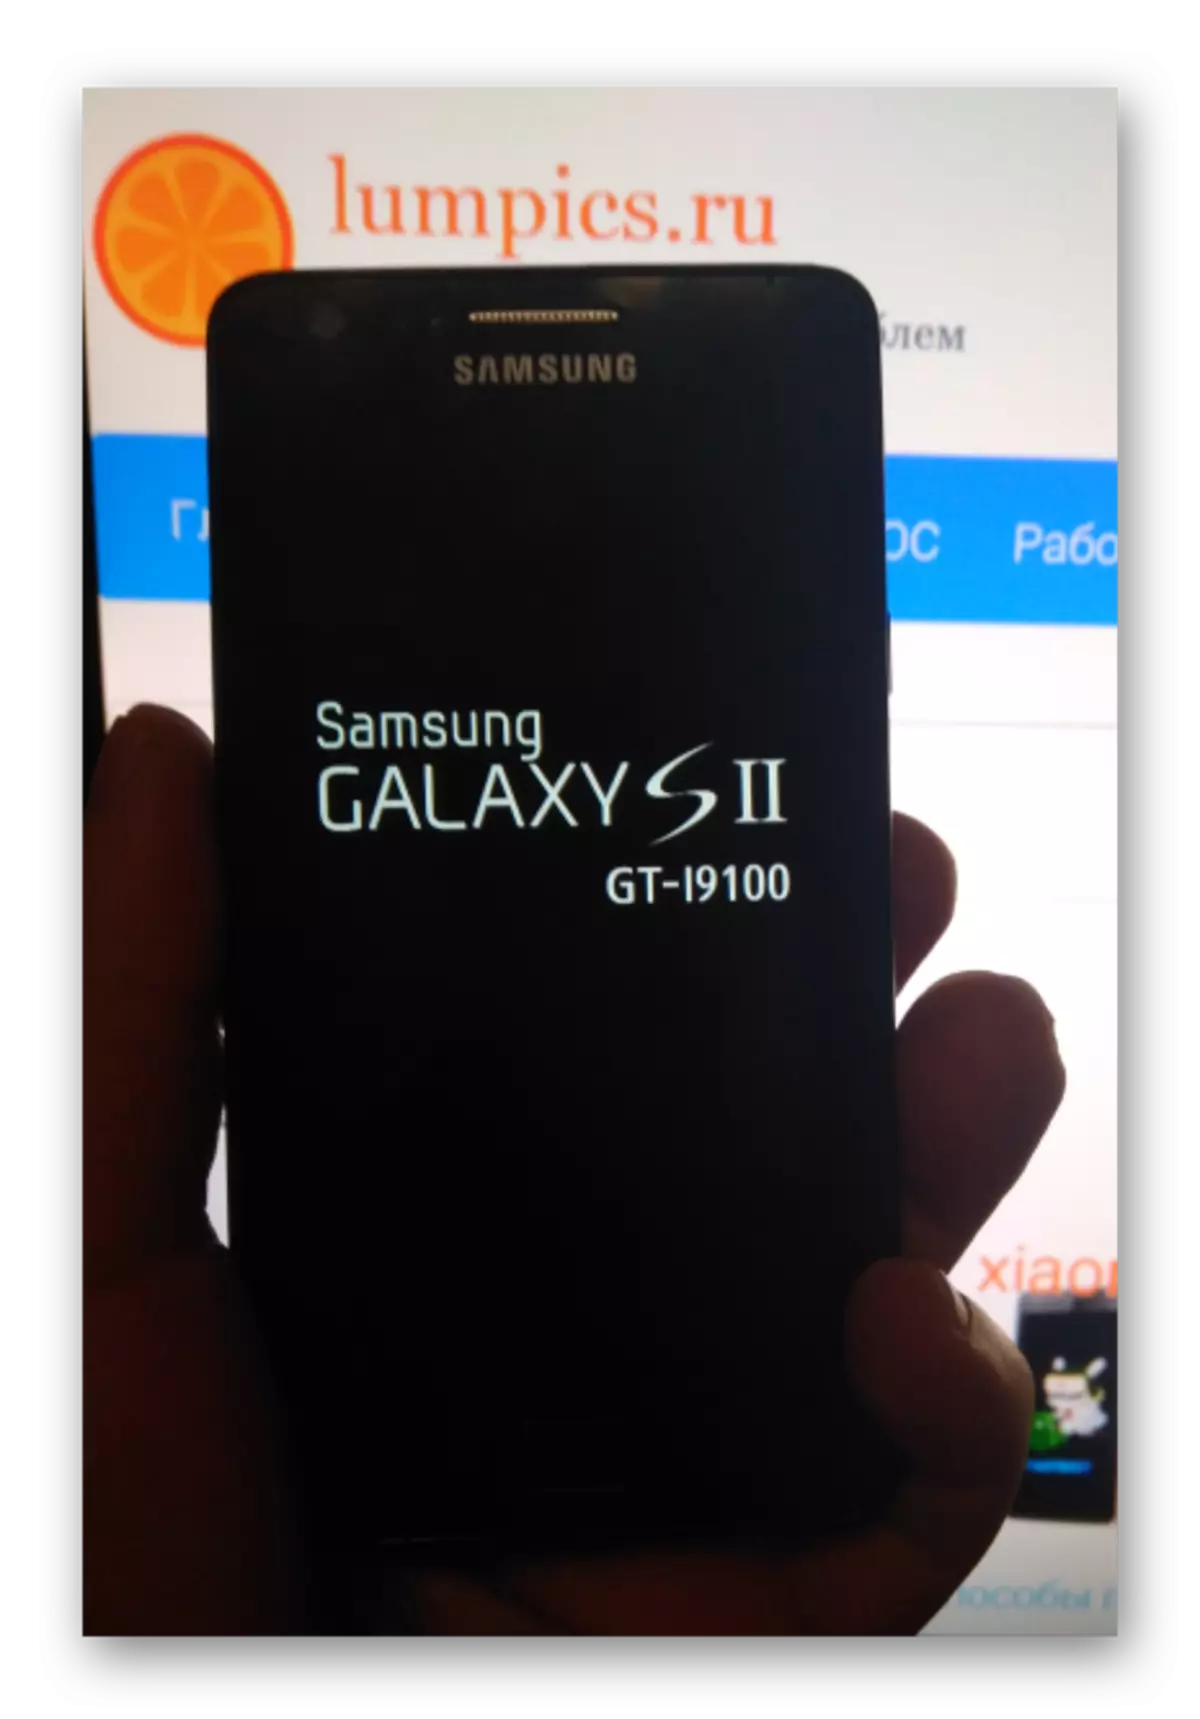 Samsung Galaxy S 2 GT-I9100 Batterie laden ier se zréckgesat an Upgrade